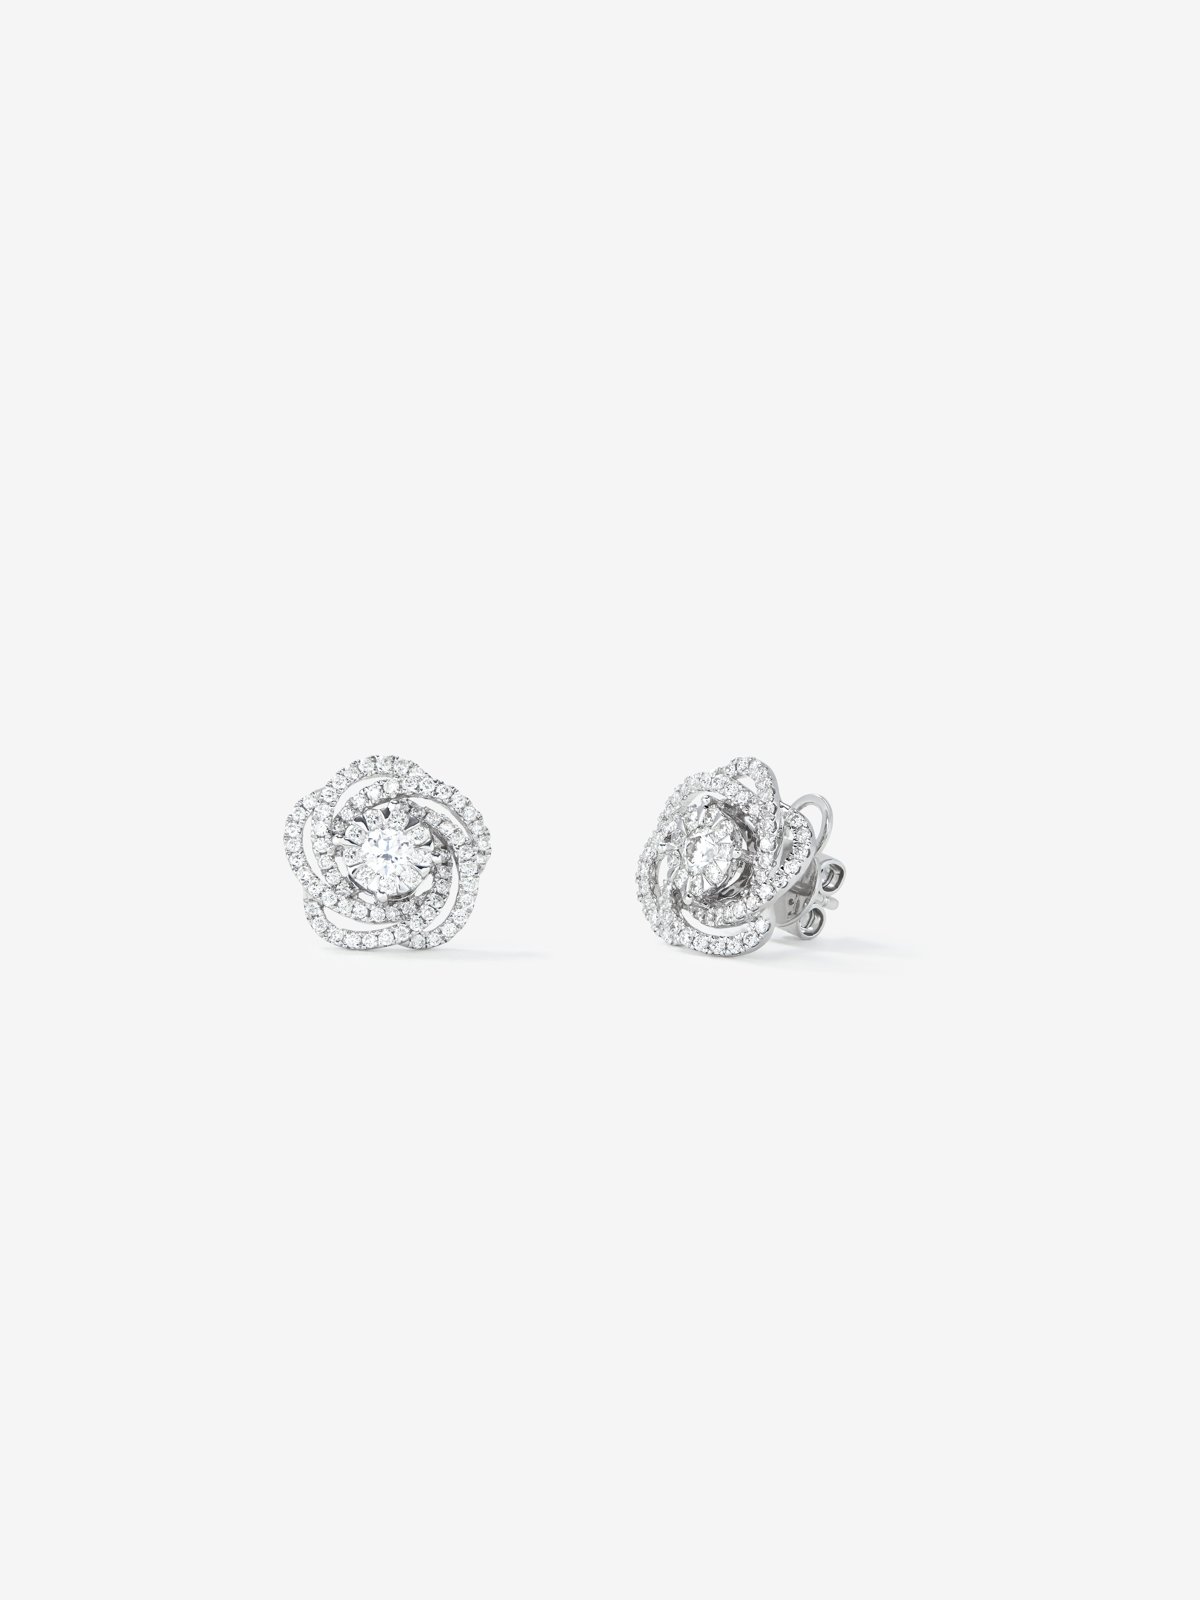 18K White Gold Flower Earrings with Diamonds